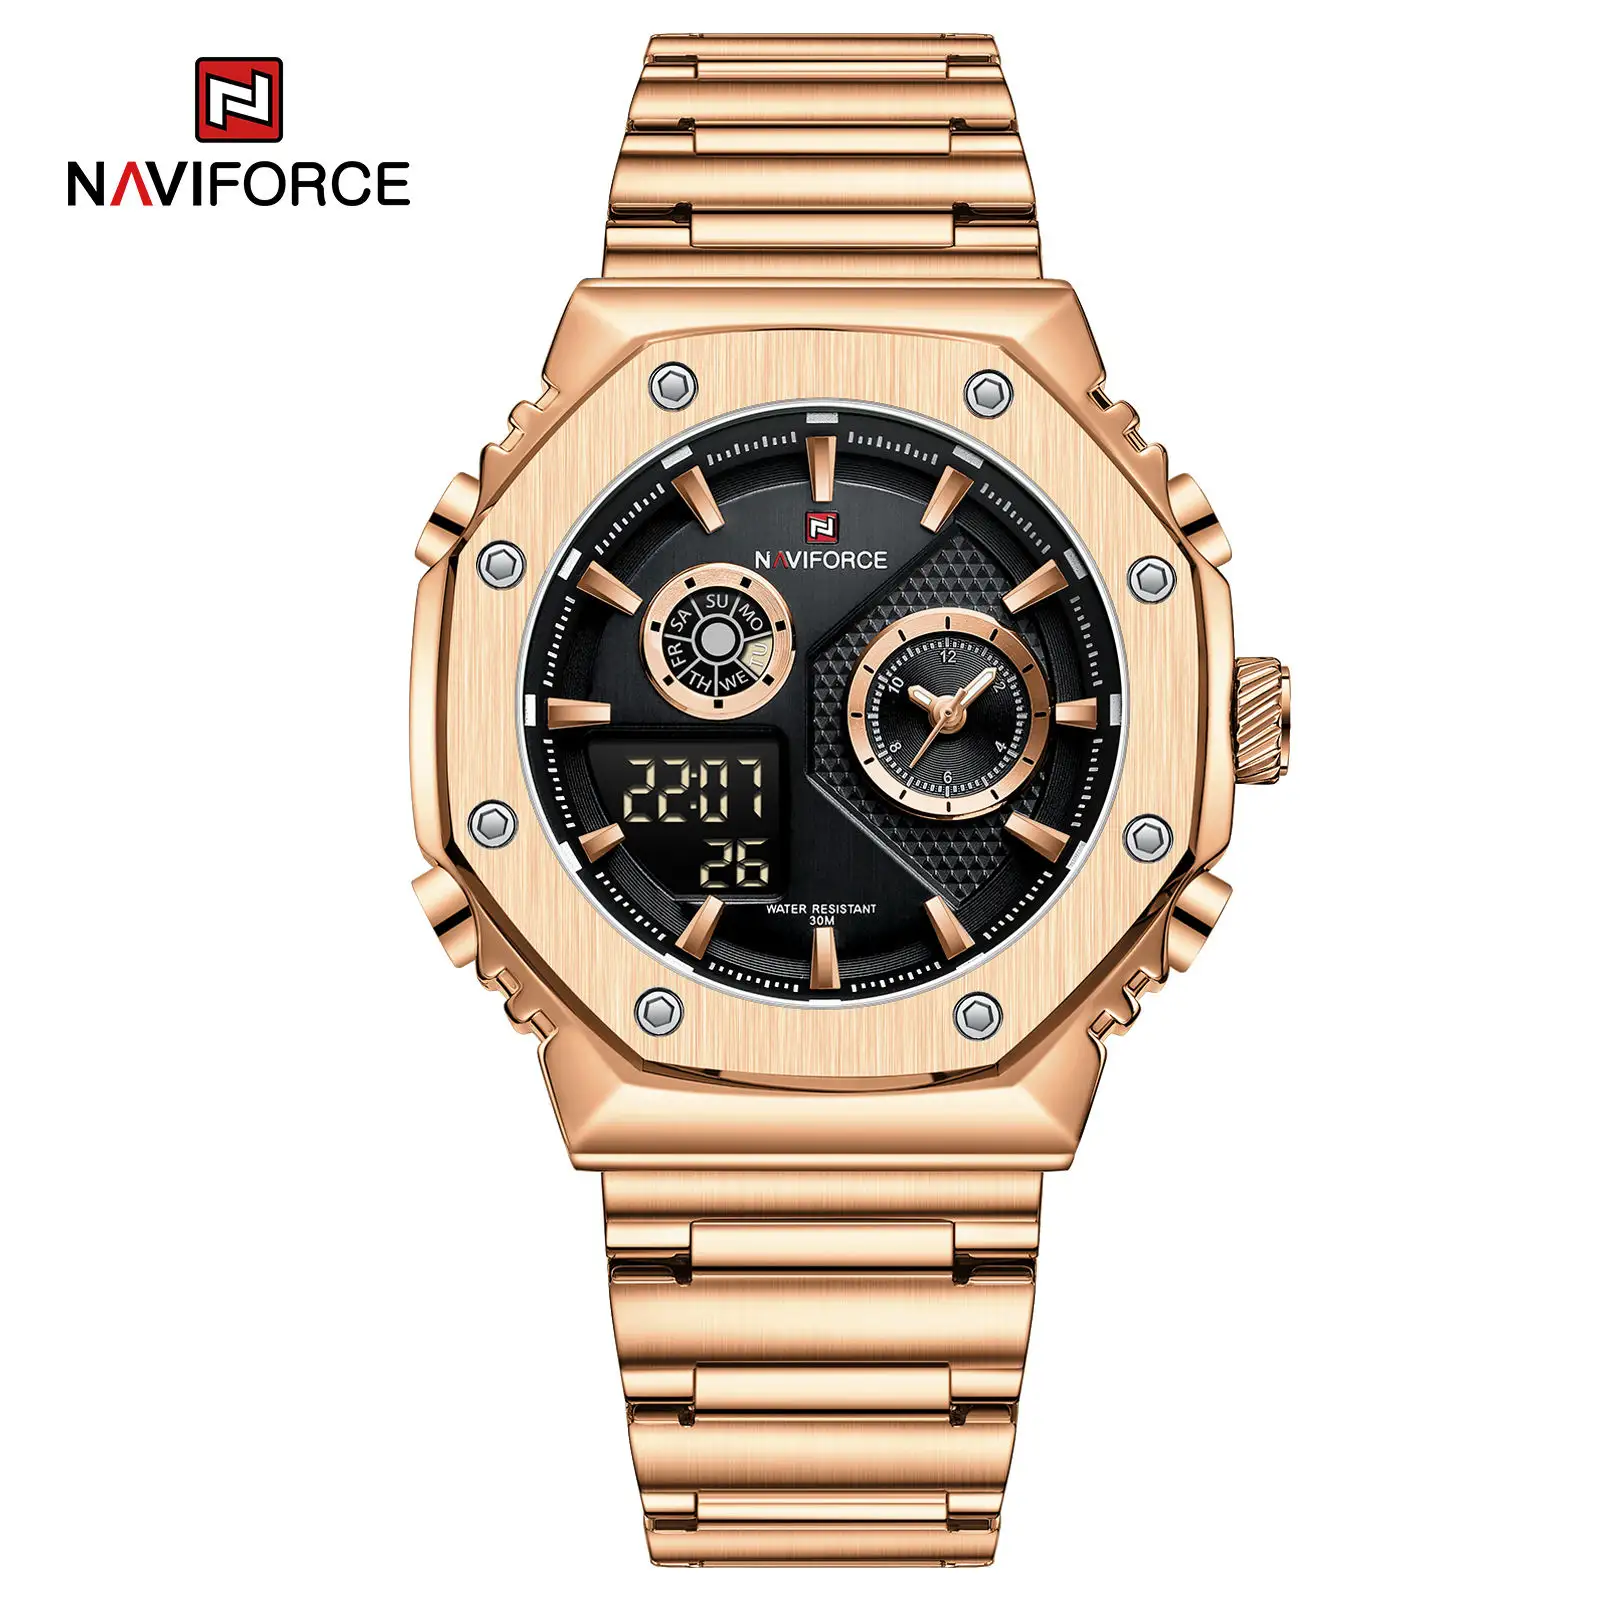 NAVIFORCE 9216S SB jam tangan Digital pria, arloji merek Quartz LED, Display ganda, jam tangan Stainless Steel untuk pria